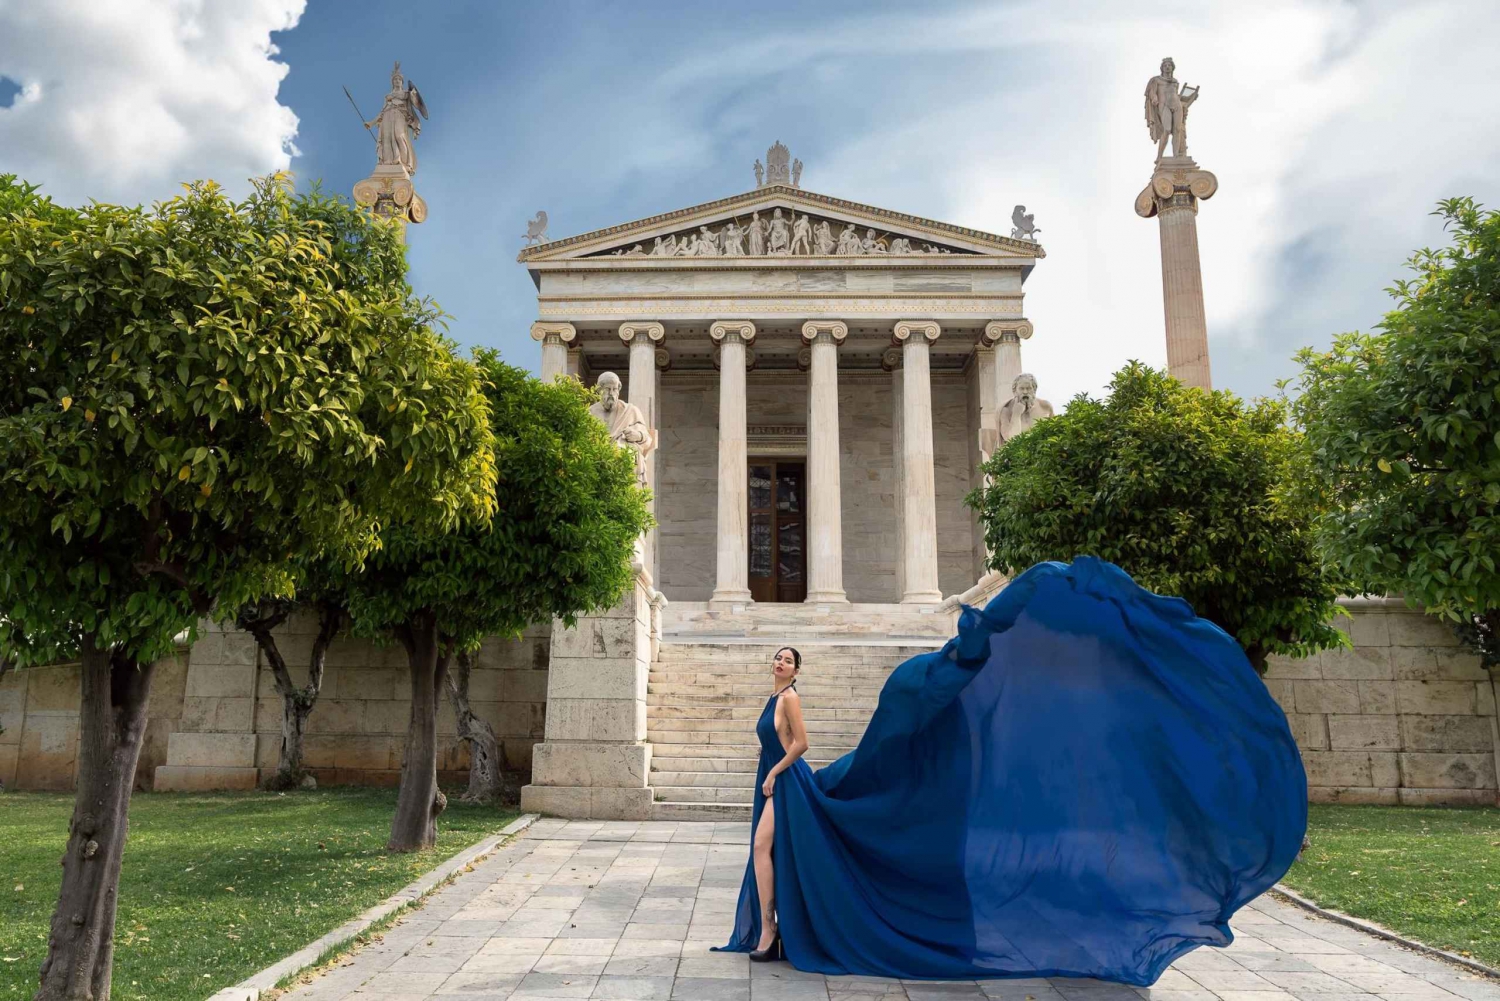 Atenas: Sessão de fotos com vestido voador 'Pacote expresso'